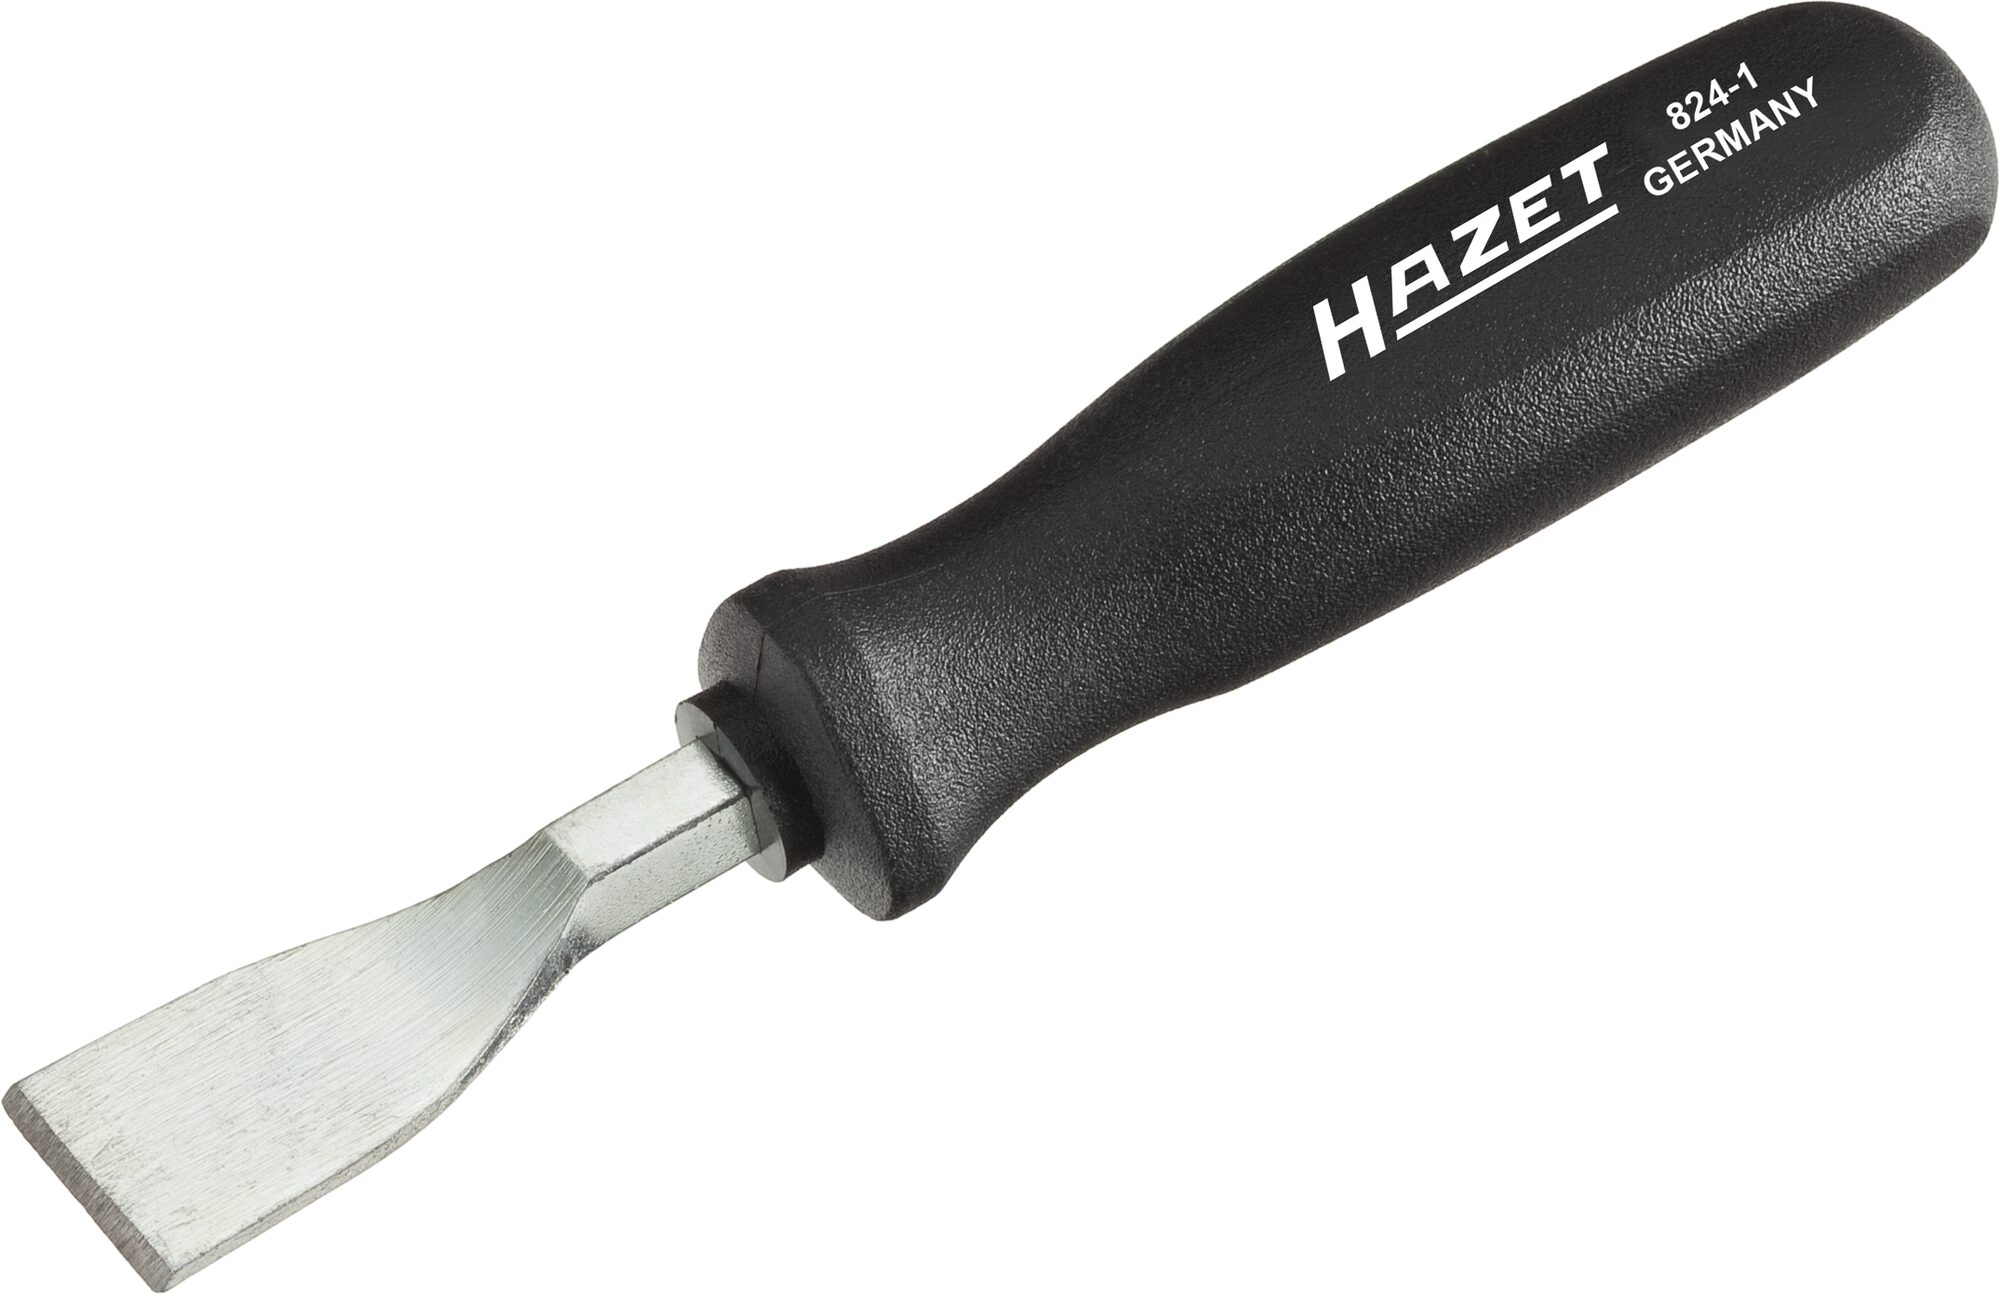 HAZET Flachschaber 824-1 · Flachprofil · 0.5 x 23 mm